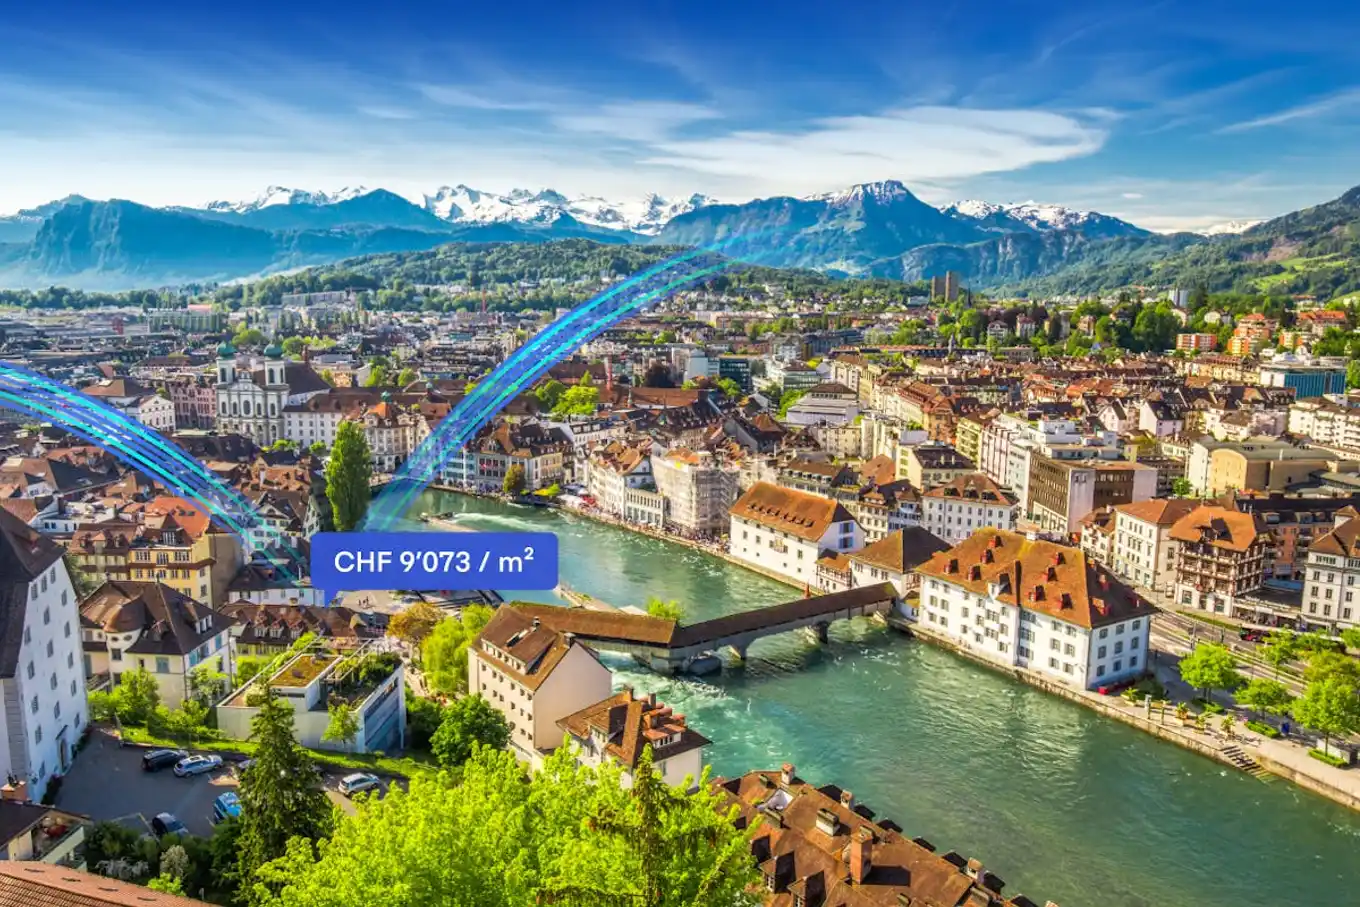 schweizer-immobilienpreis-barometer-q1-2022